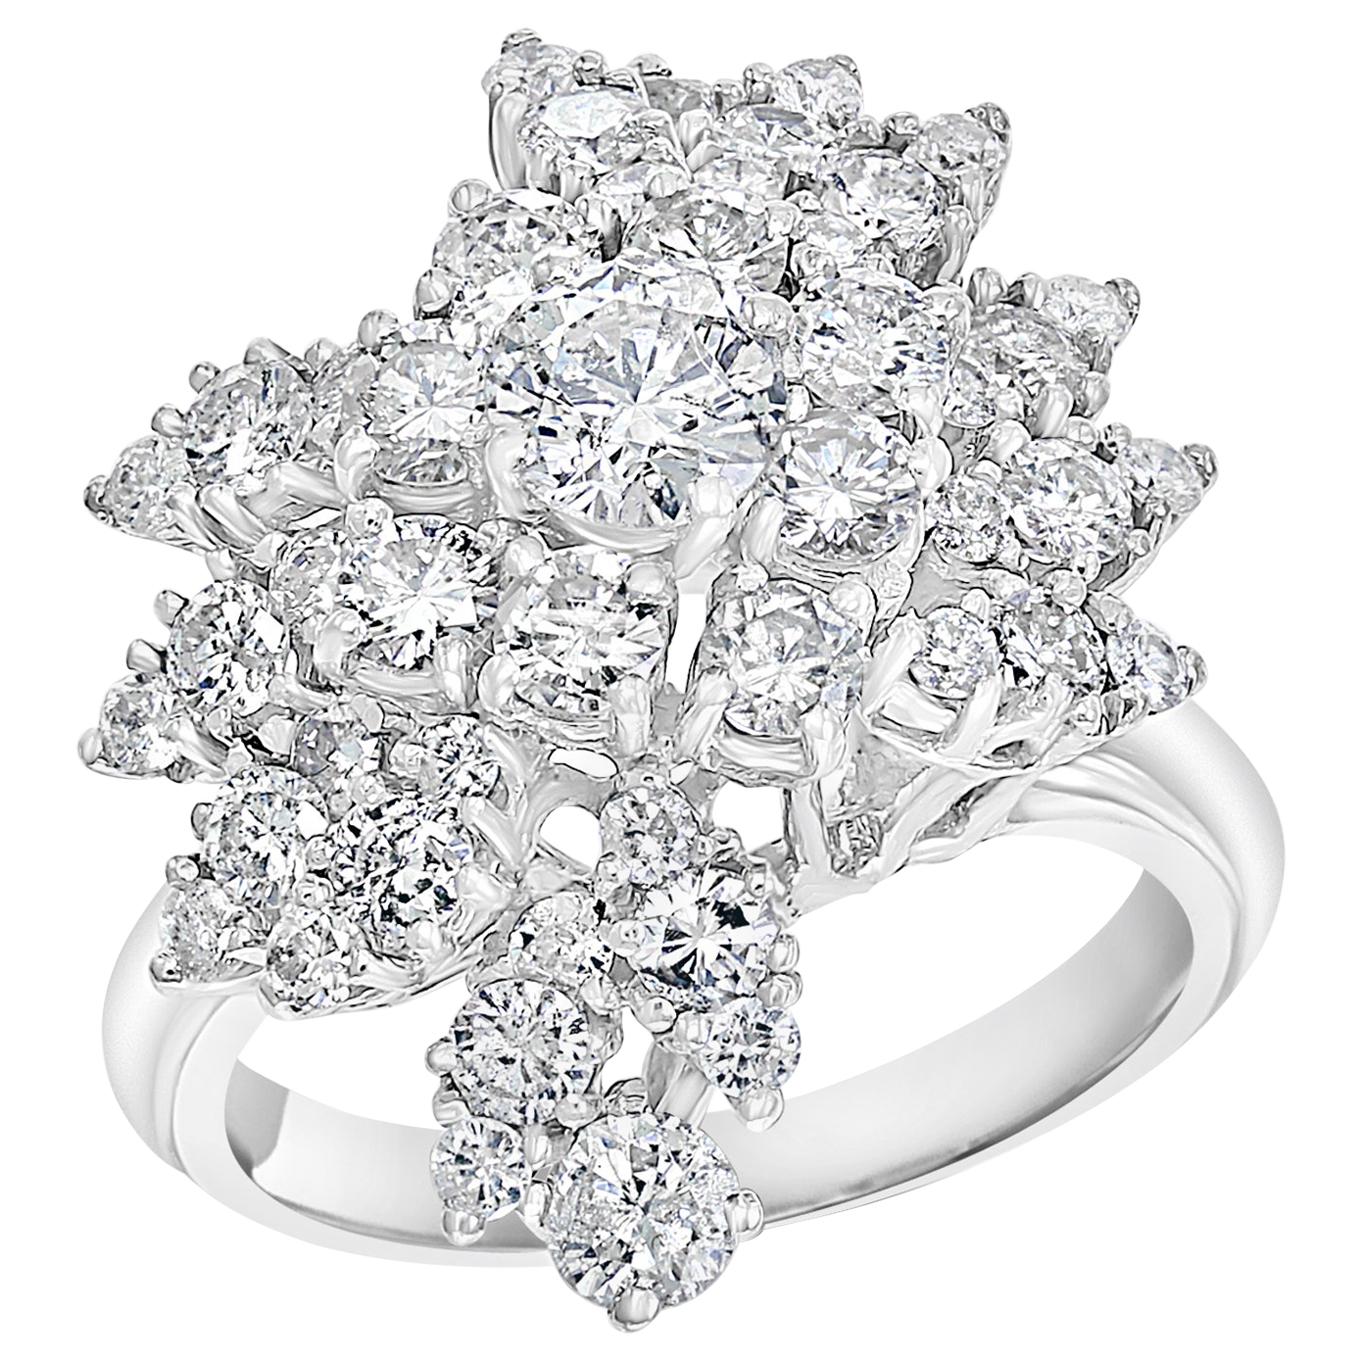 2.5 Carat Diamond Cluster Cocktail Ring 18 Karat White Gold 12.8 Grams Ring